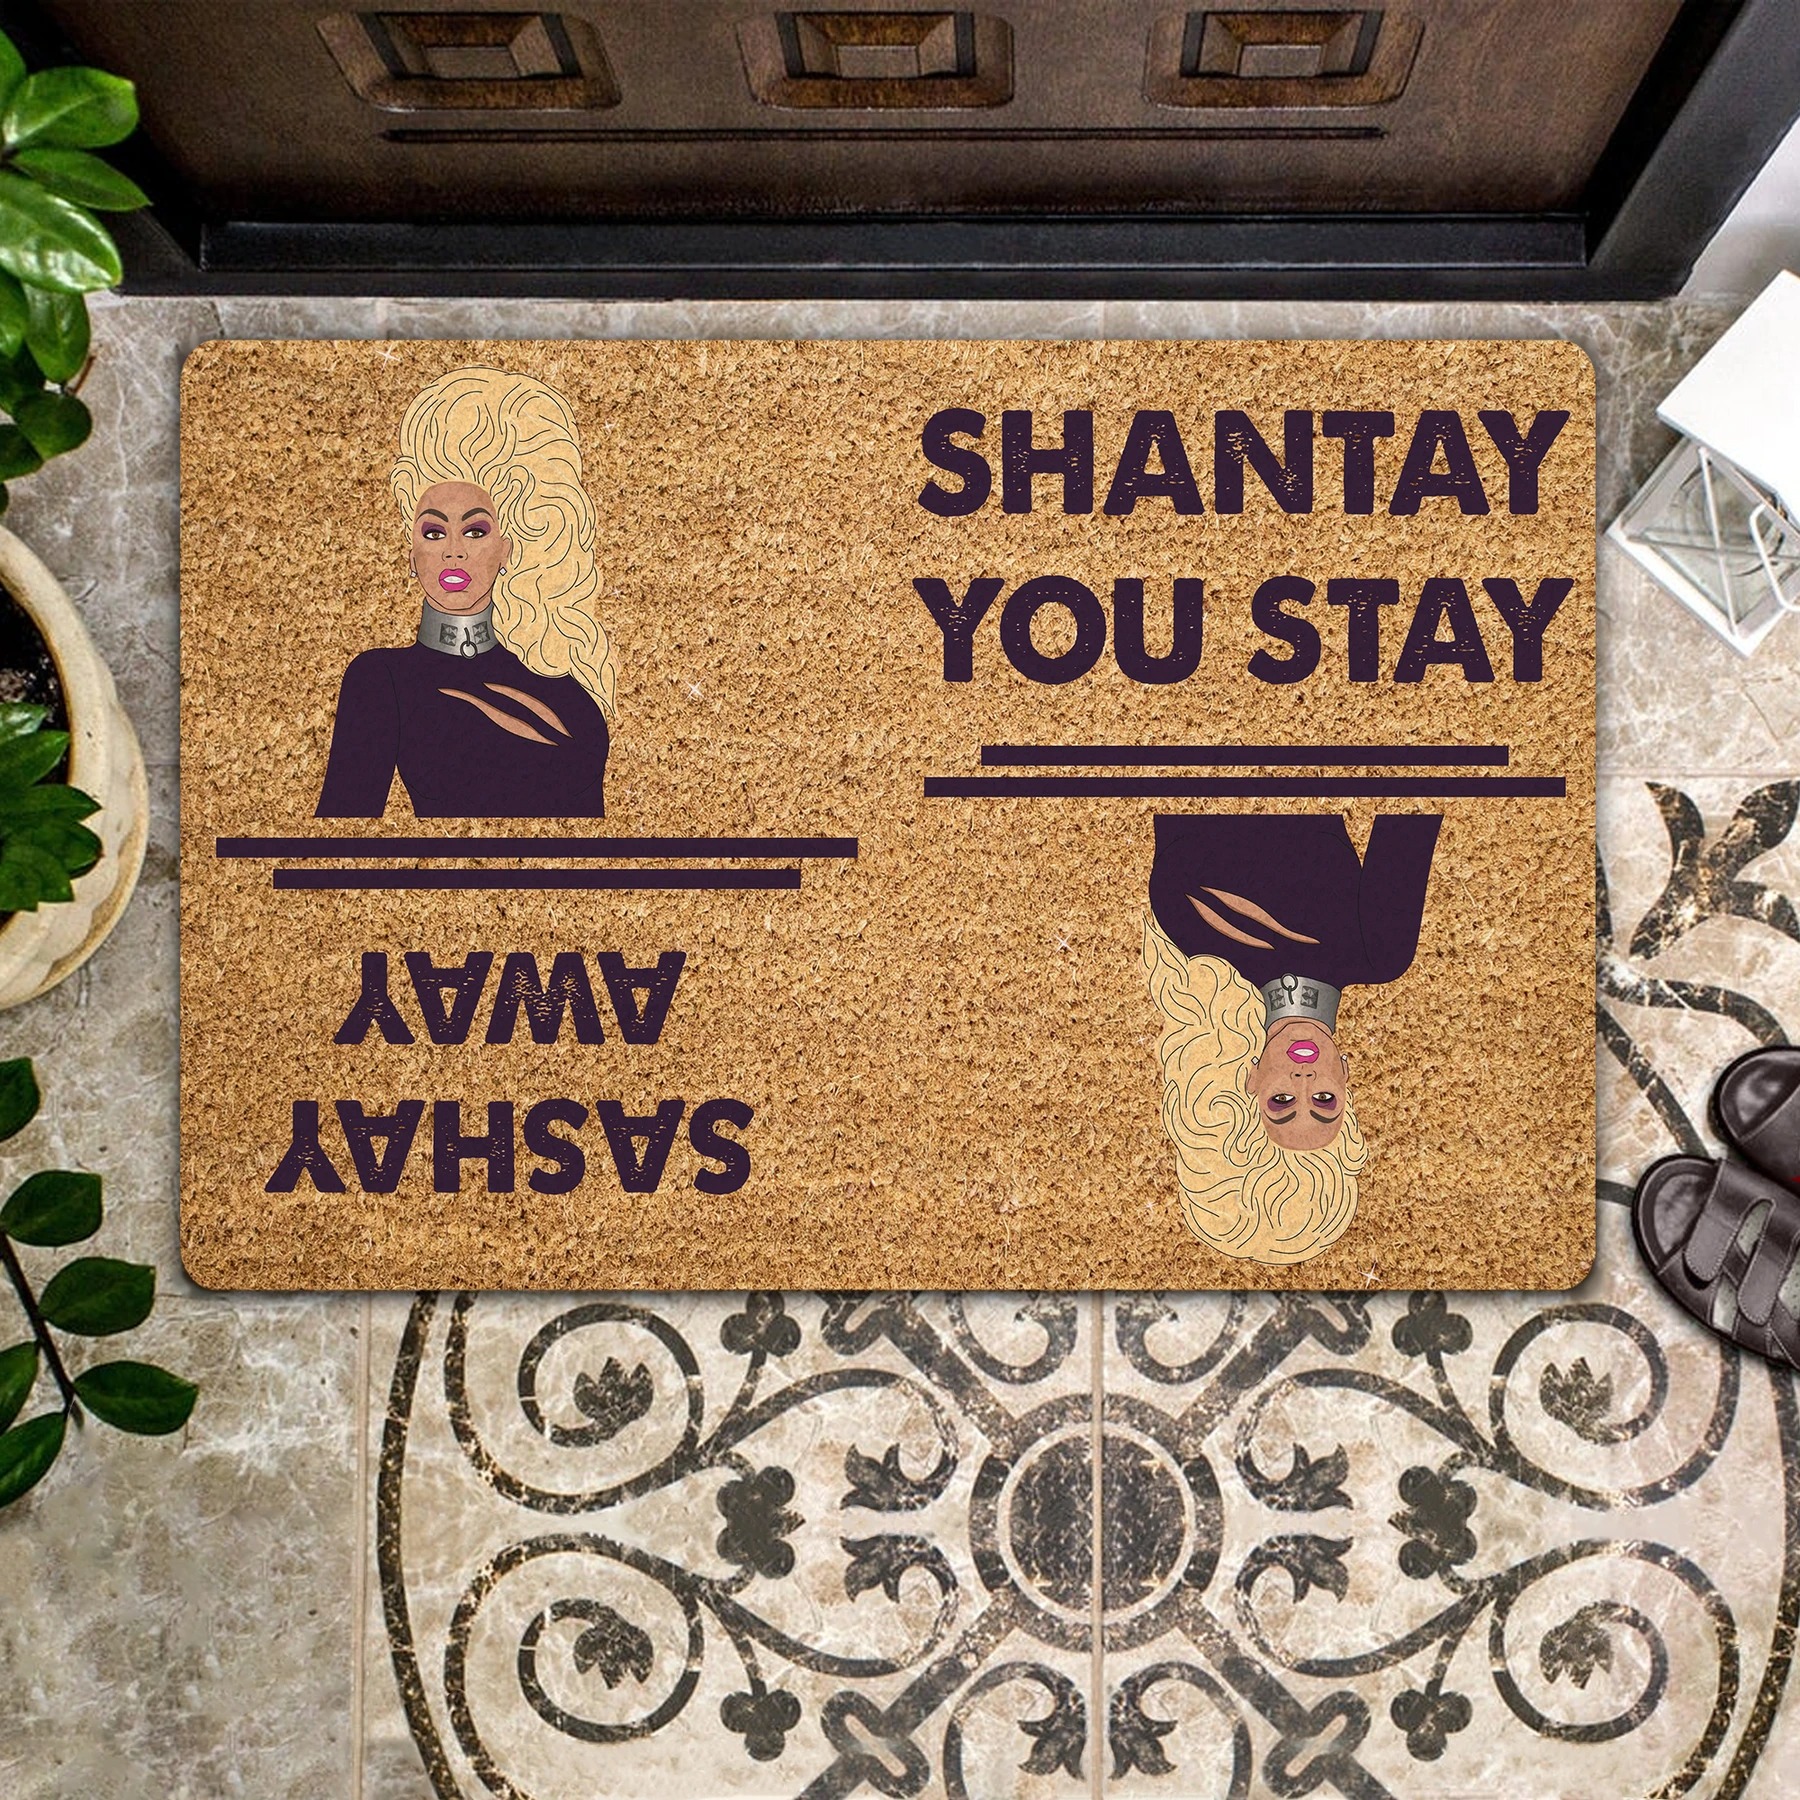 Rupaul shantay you stay sashay away doormat